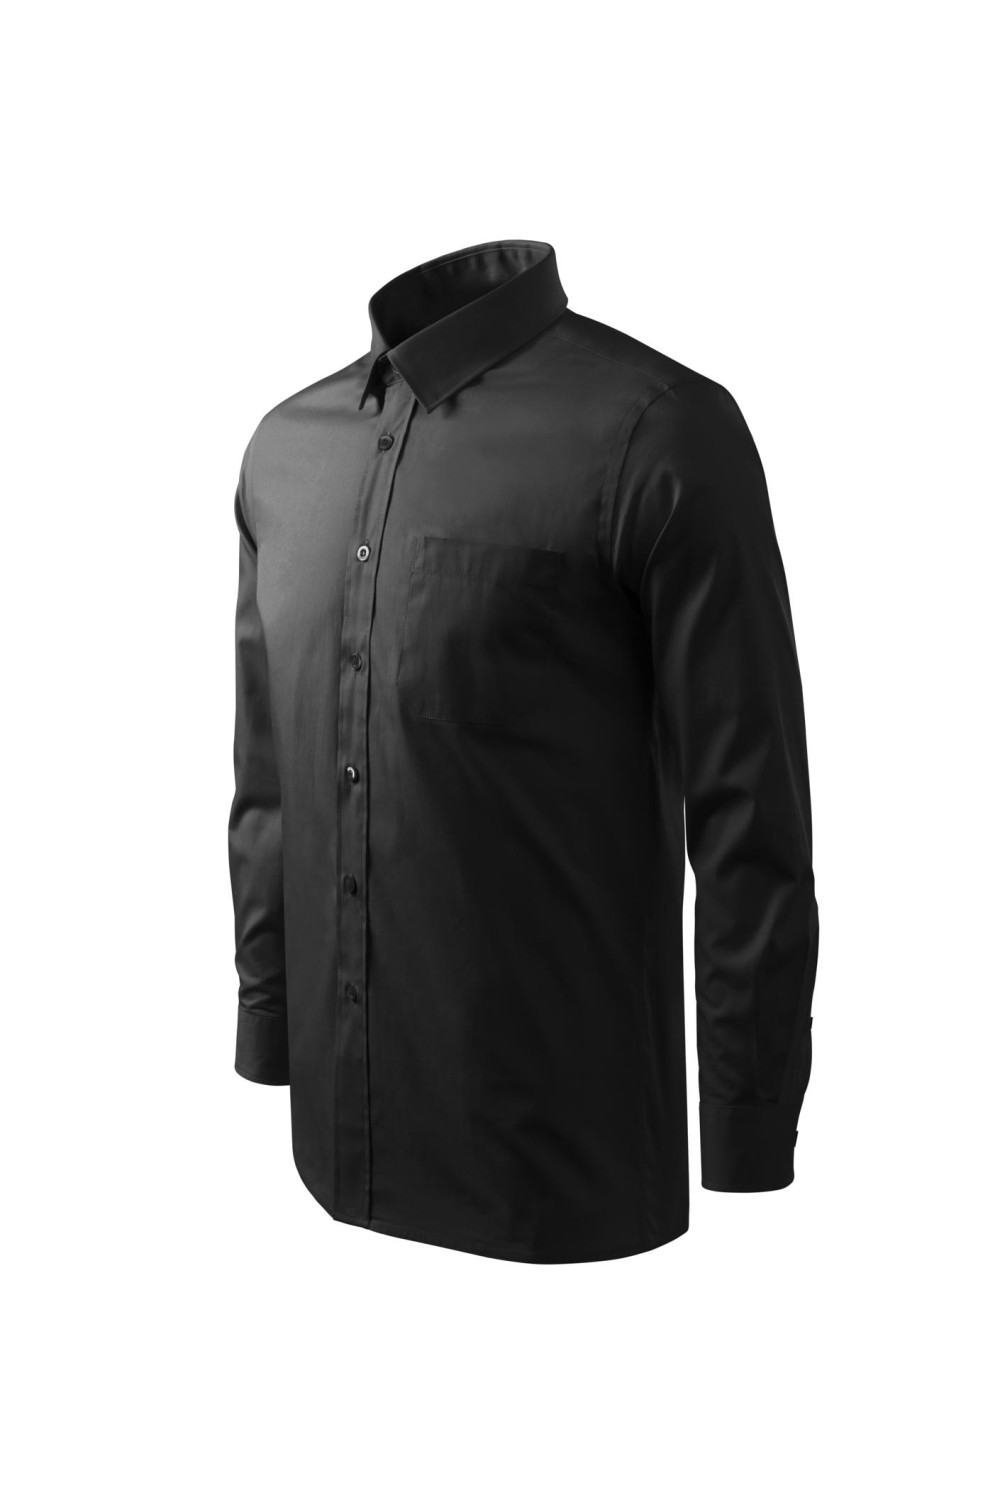 Koszula męska, długi rękaw. 100 % bawełna 209 koszule czarny